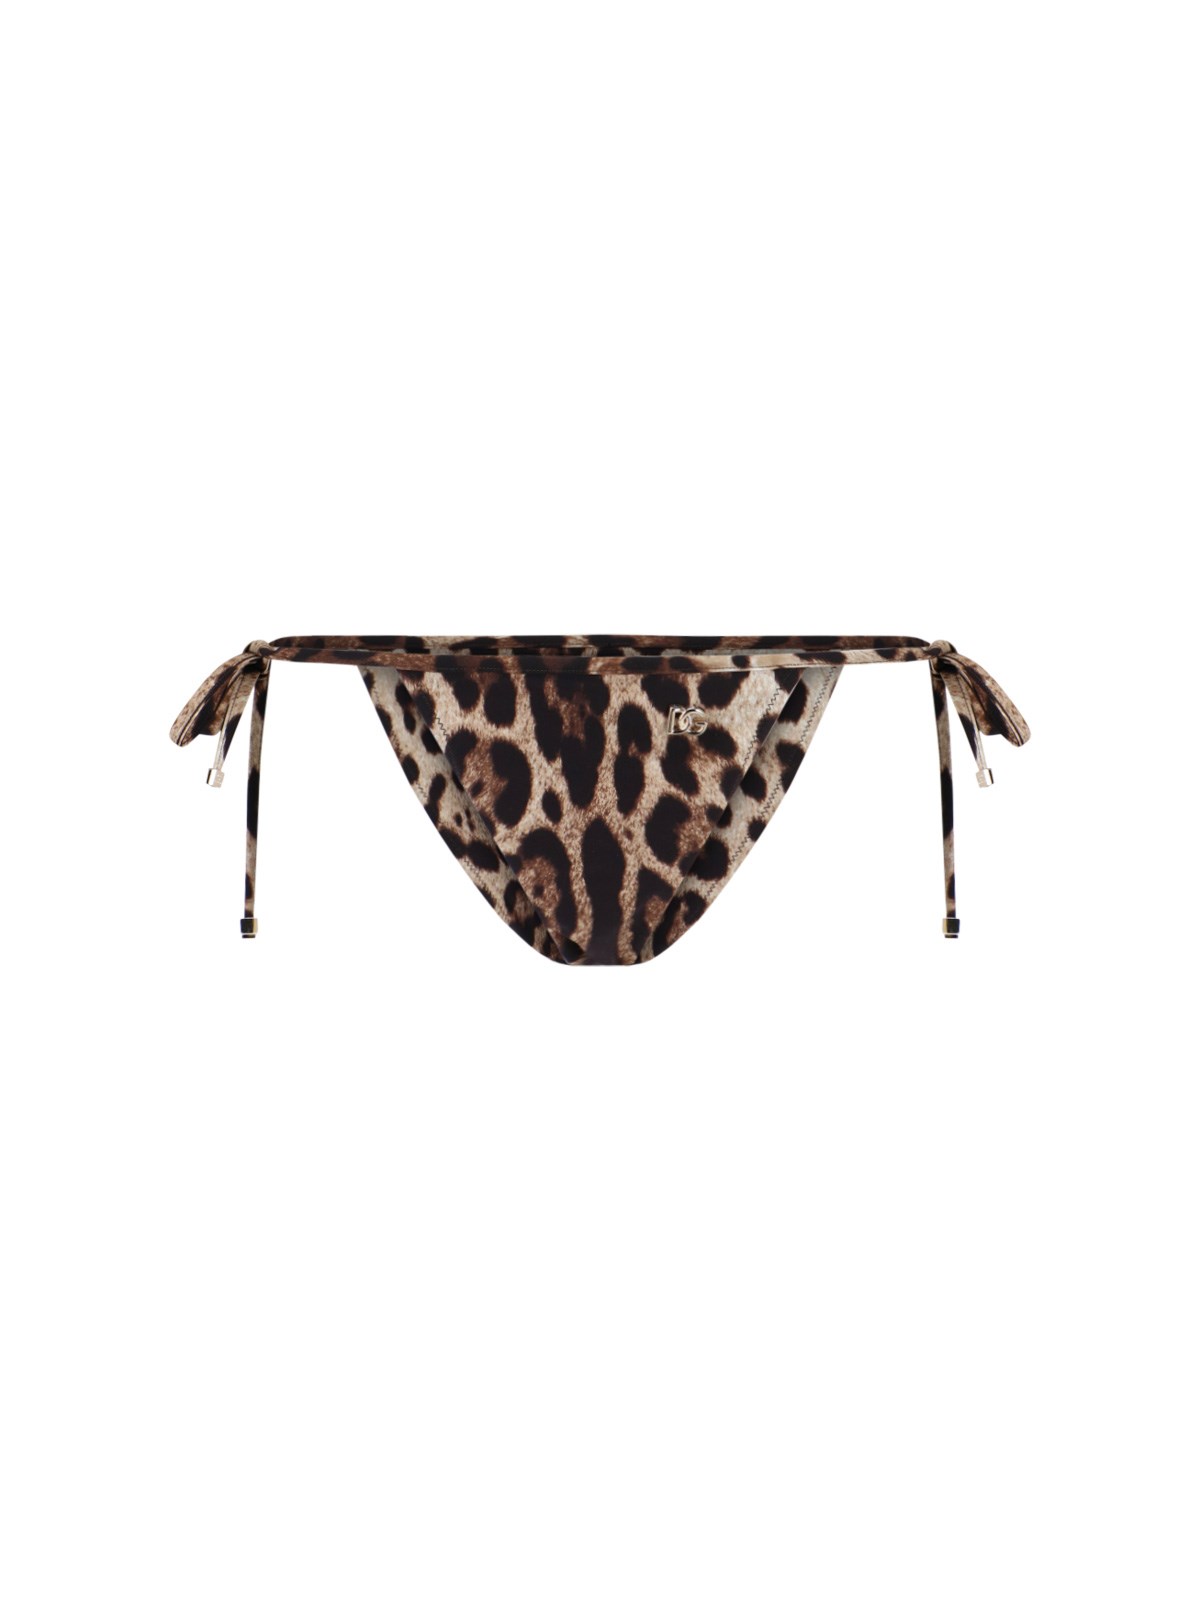 Dolce & Gabbana Animal Print Bikini Bottom In Marrone